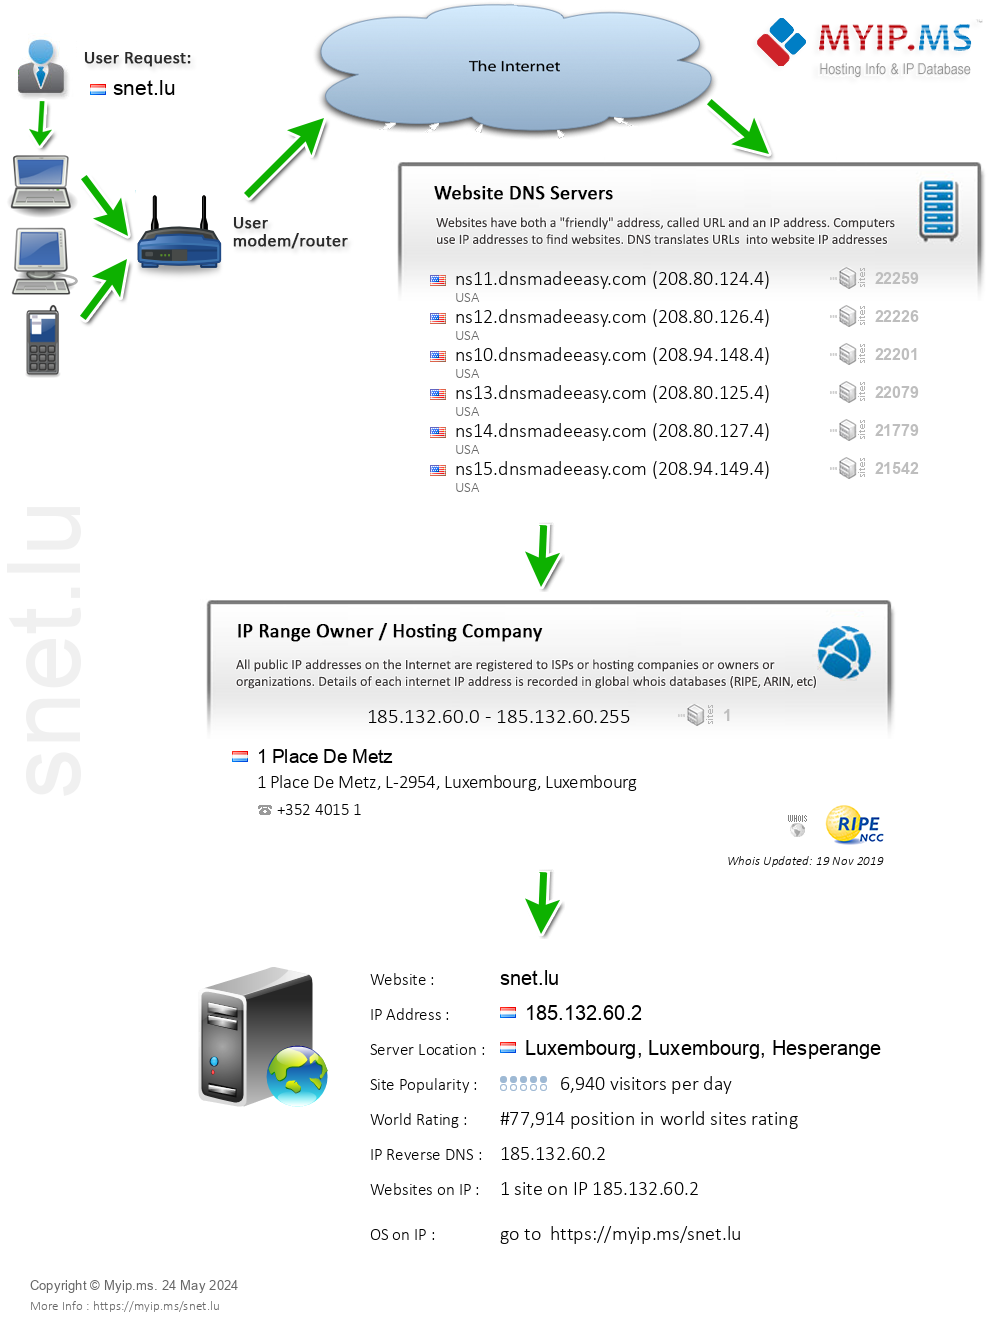 Snet.lu - Website Hosting Visual IP Diagram